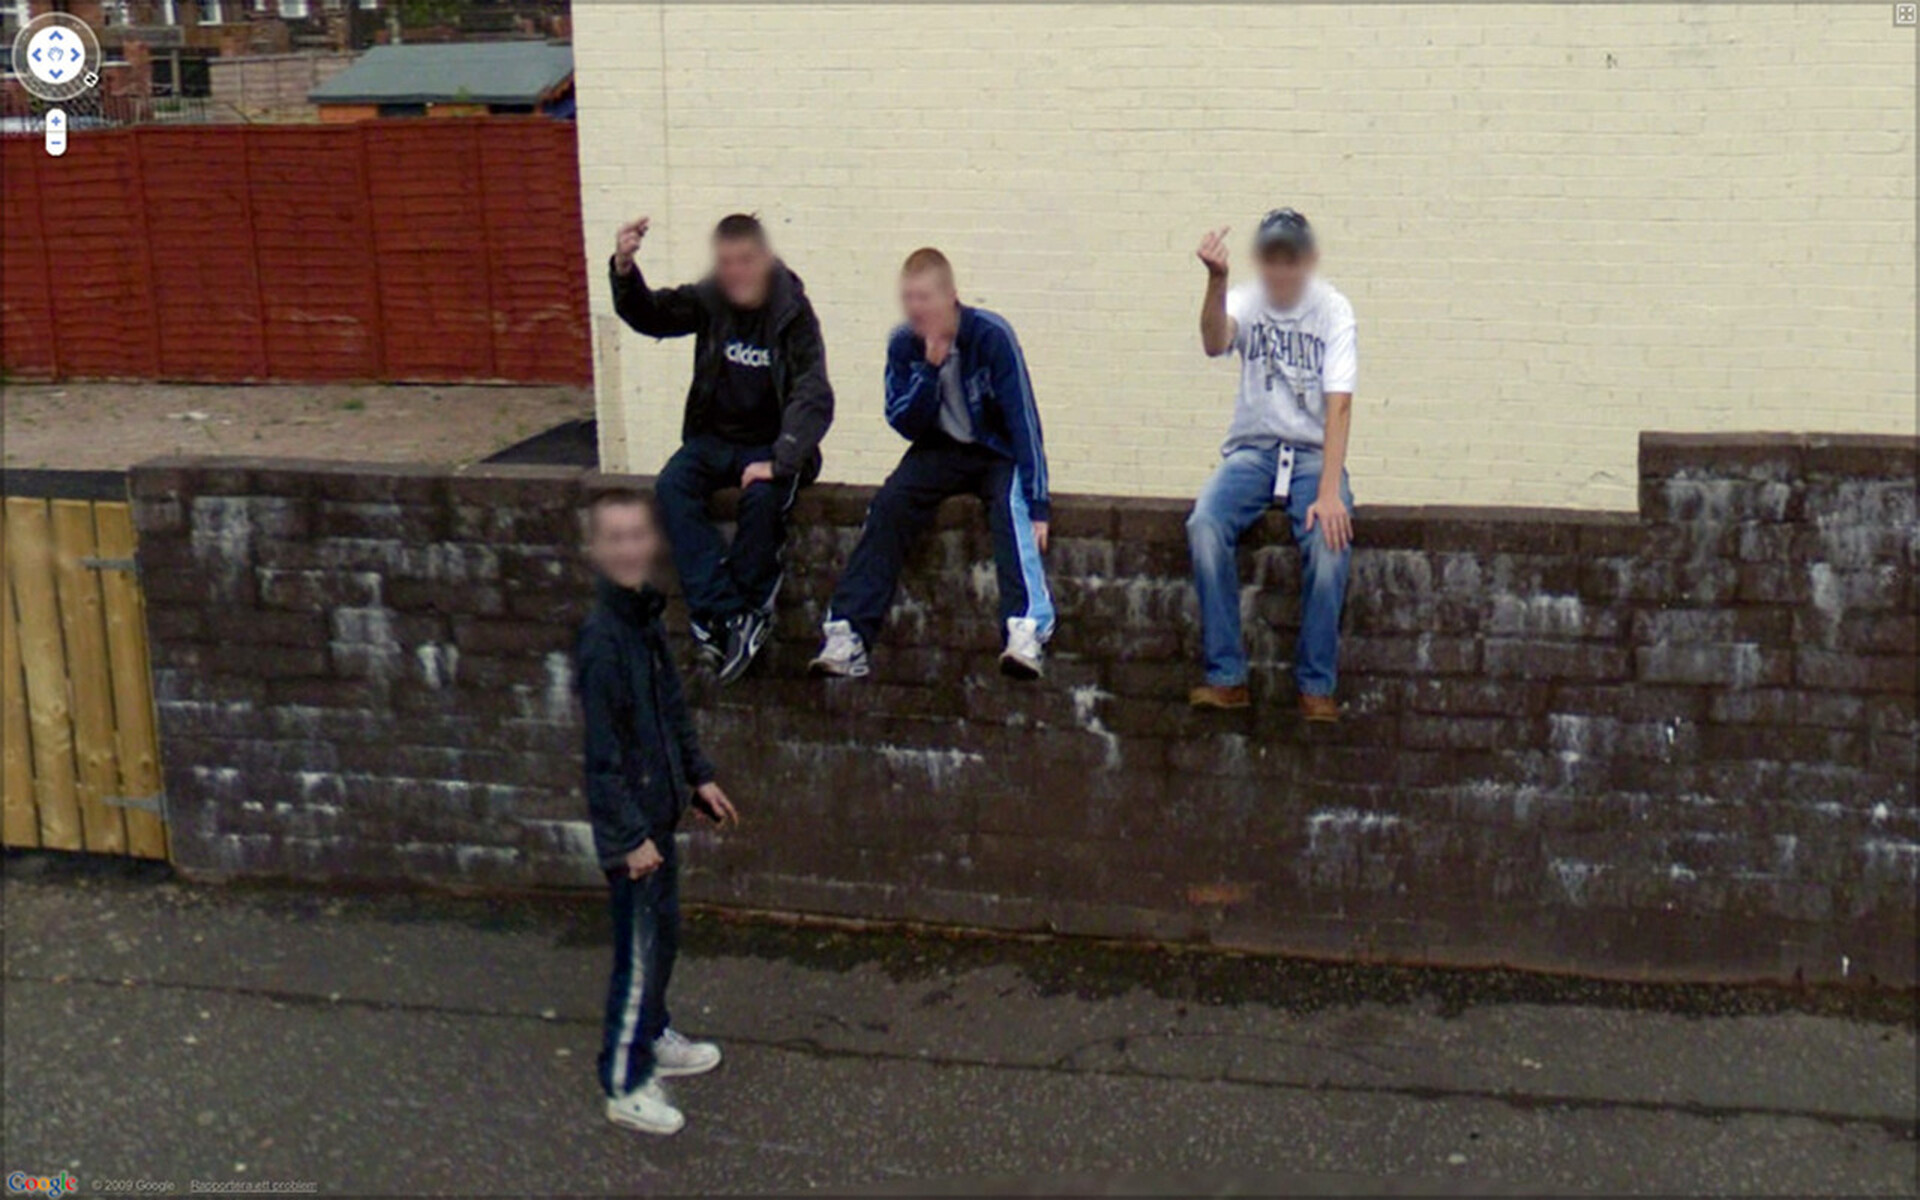  Zdjęcie z projektu 9 Eyes Johna Rafmana, w ramach którego artysta szukał ciekawych fotografii wykonanych przez aparaty Google Street View. Na tym zdjęciu widzimy brudny ceglany mur przy ulicy. Na murze siedzi trzech chłopaków w dresach. 